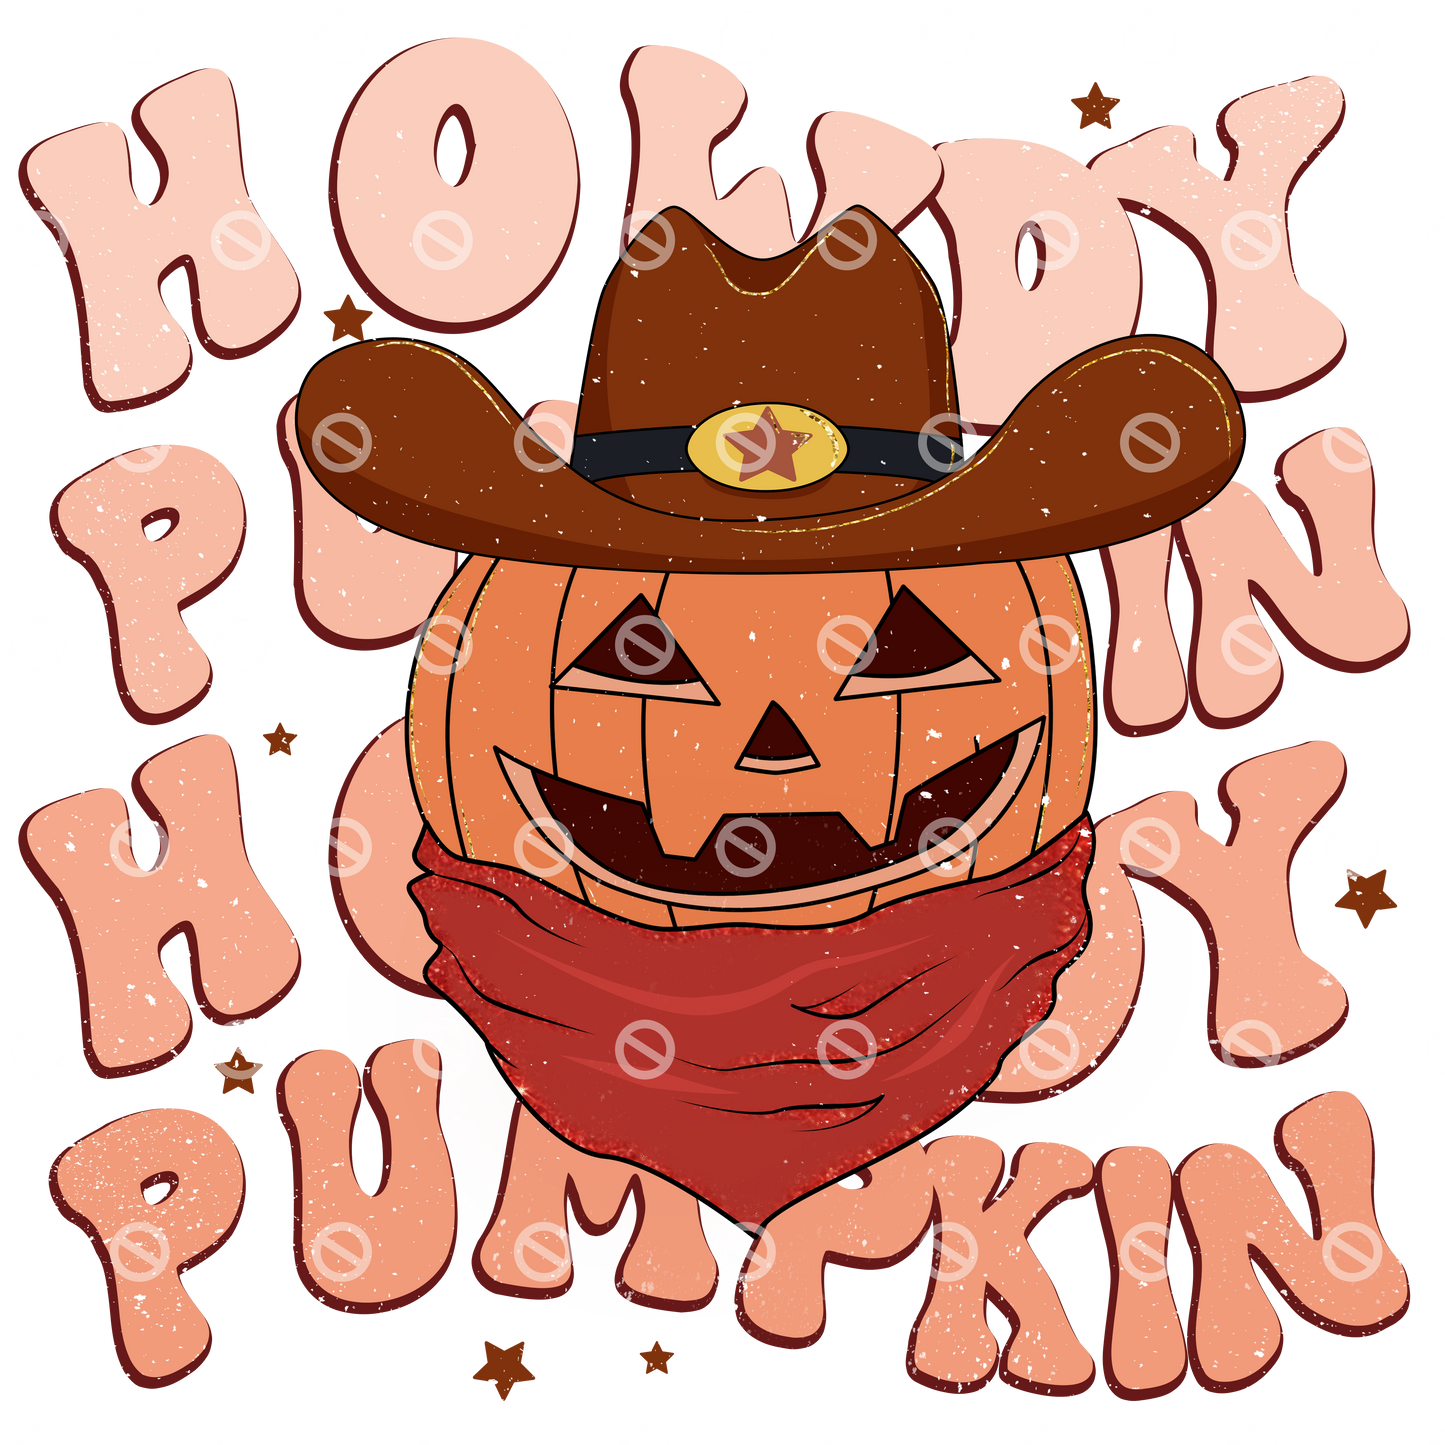 Howdy Pumpkin 01 Retro Direct to Film Transfer